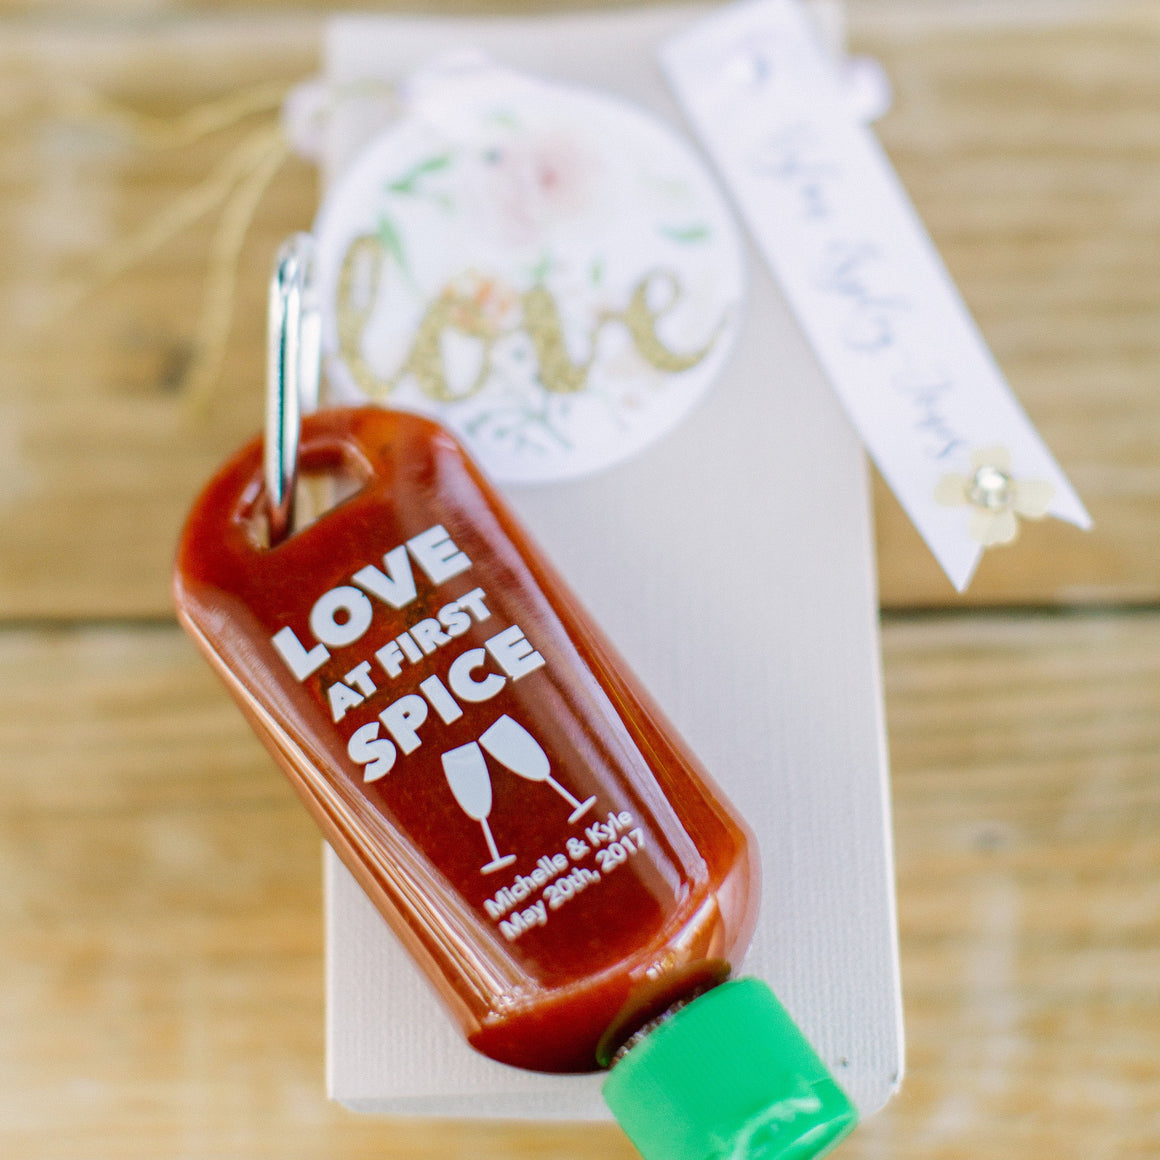 Sriracha2Go - Custom Sriracha2Go